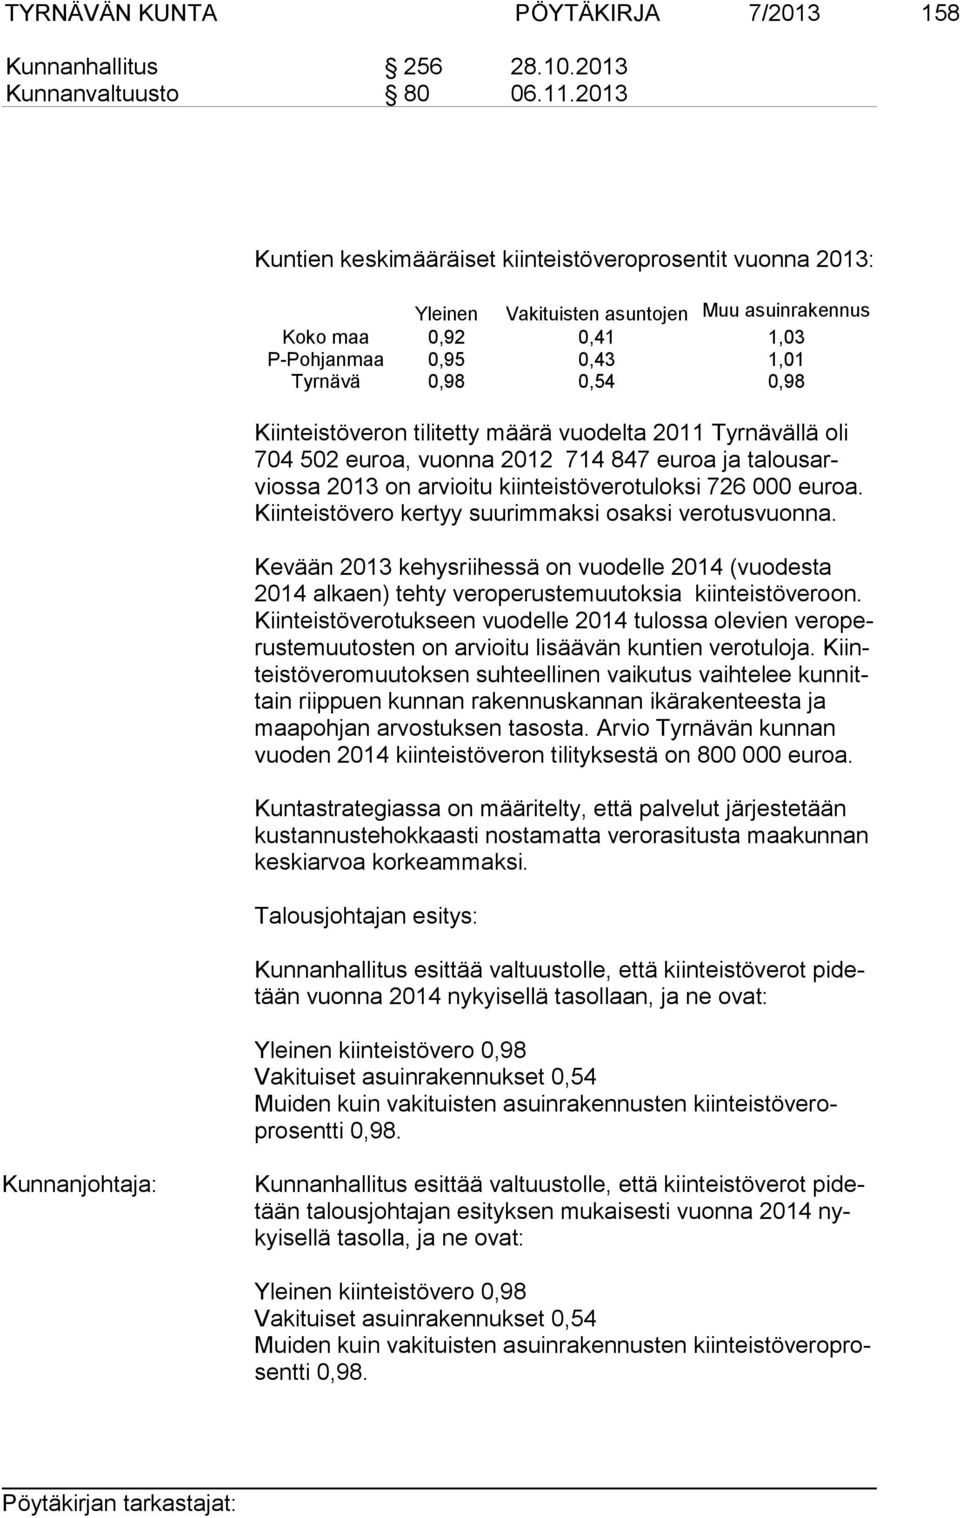 Kiinteistöveron tilitetty määrä vuodelta 2011 Tyrnävällä oli 704 502 eu roa, vuonna 2012 714 847 euroa ja ta lous arvios sa 2013 on arvioitu kiinteistöverotuloksi 726 000 euroa.